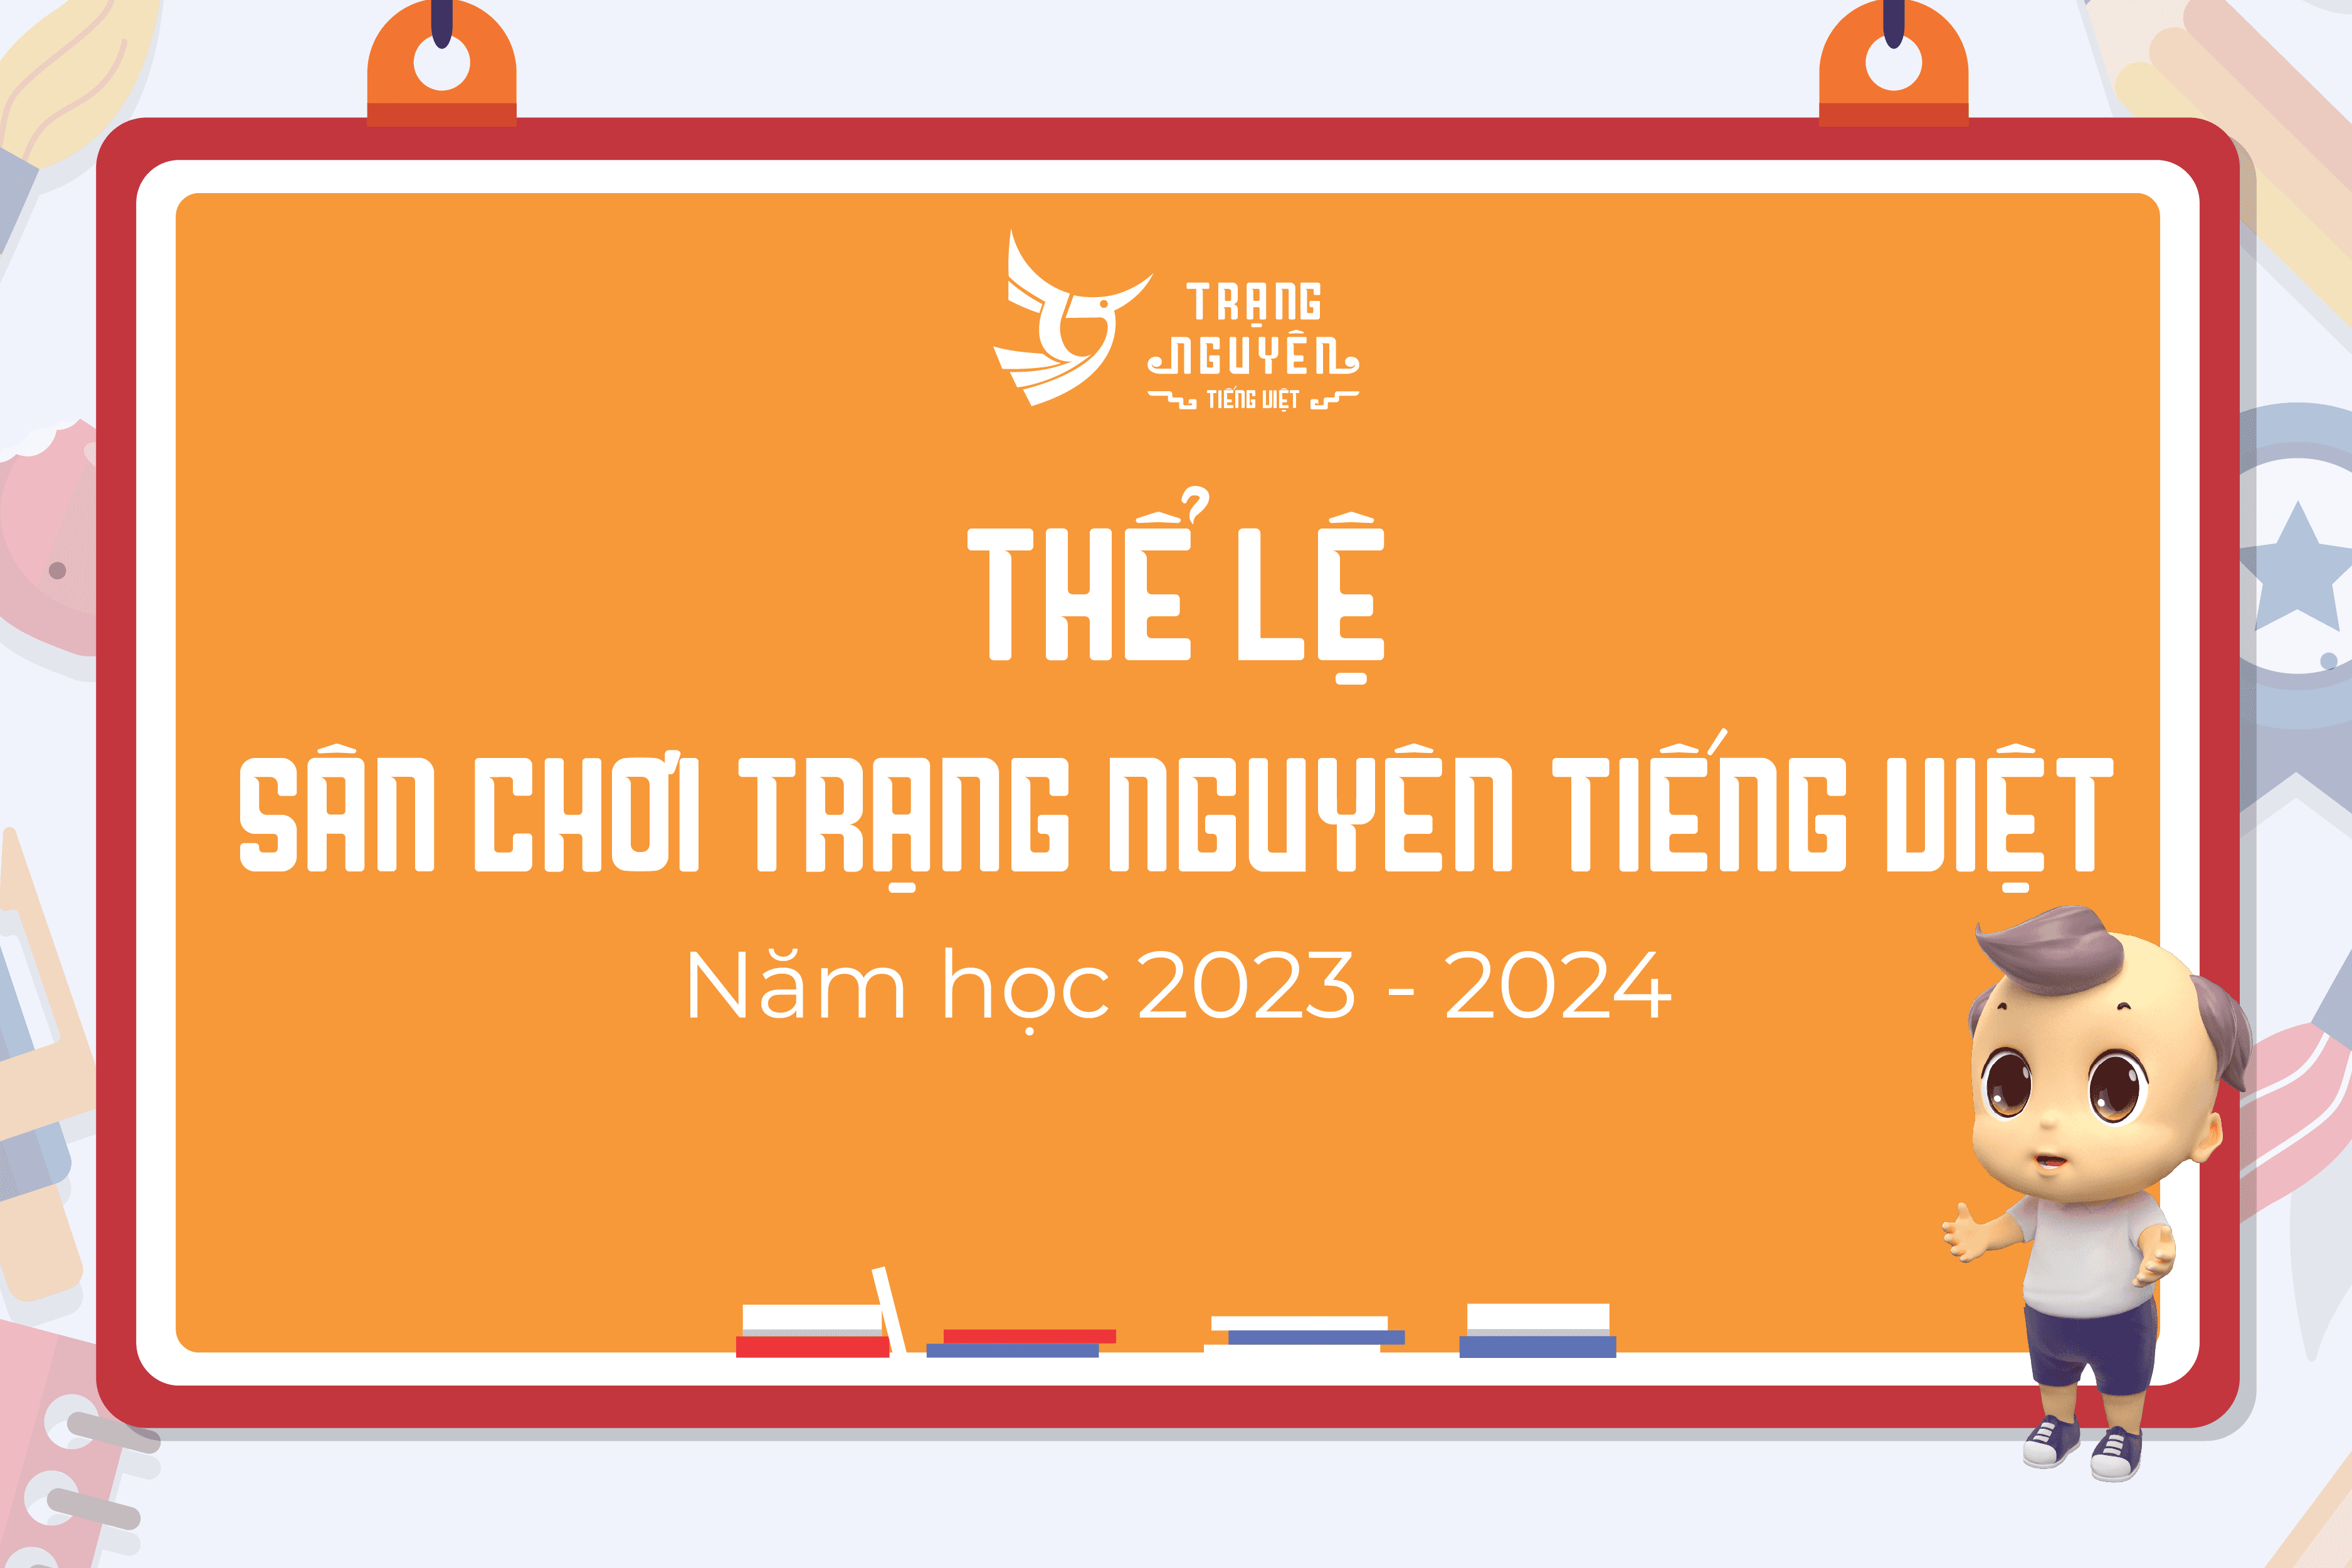 the-le-san-choi-trang-nguyen-tieng-viet-nam-hoc-2023-2024